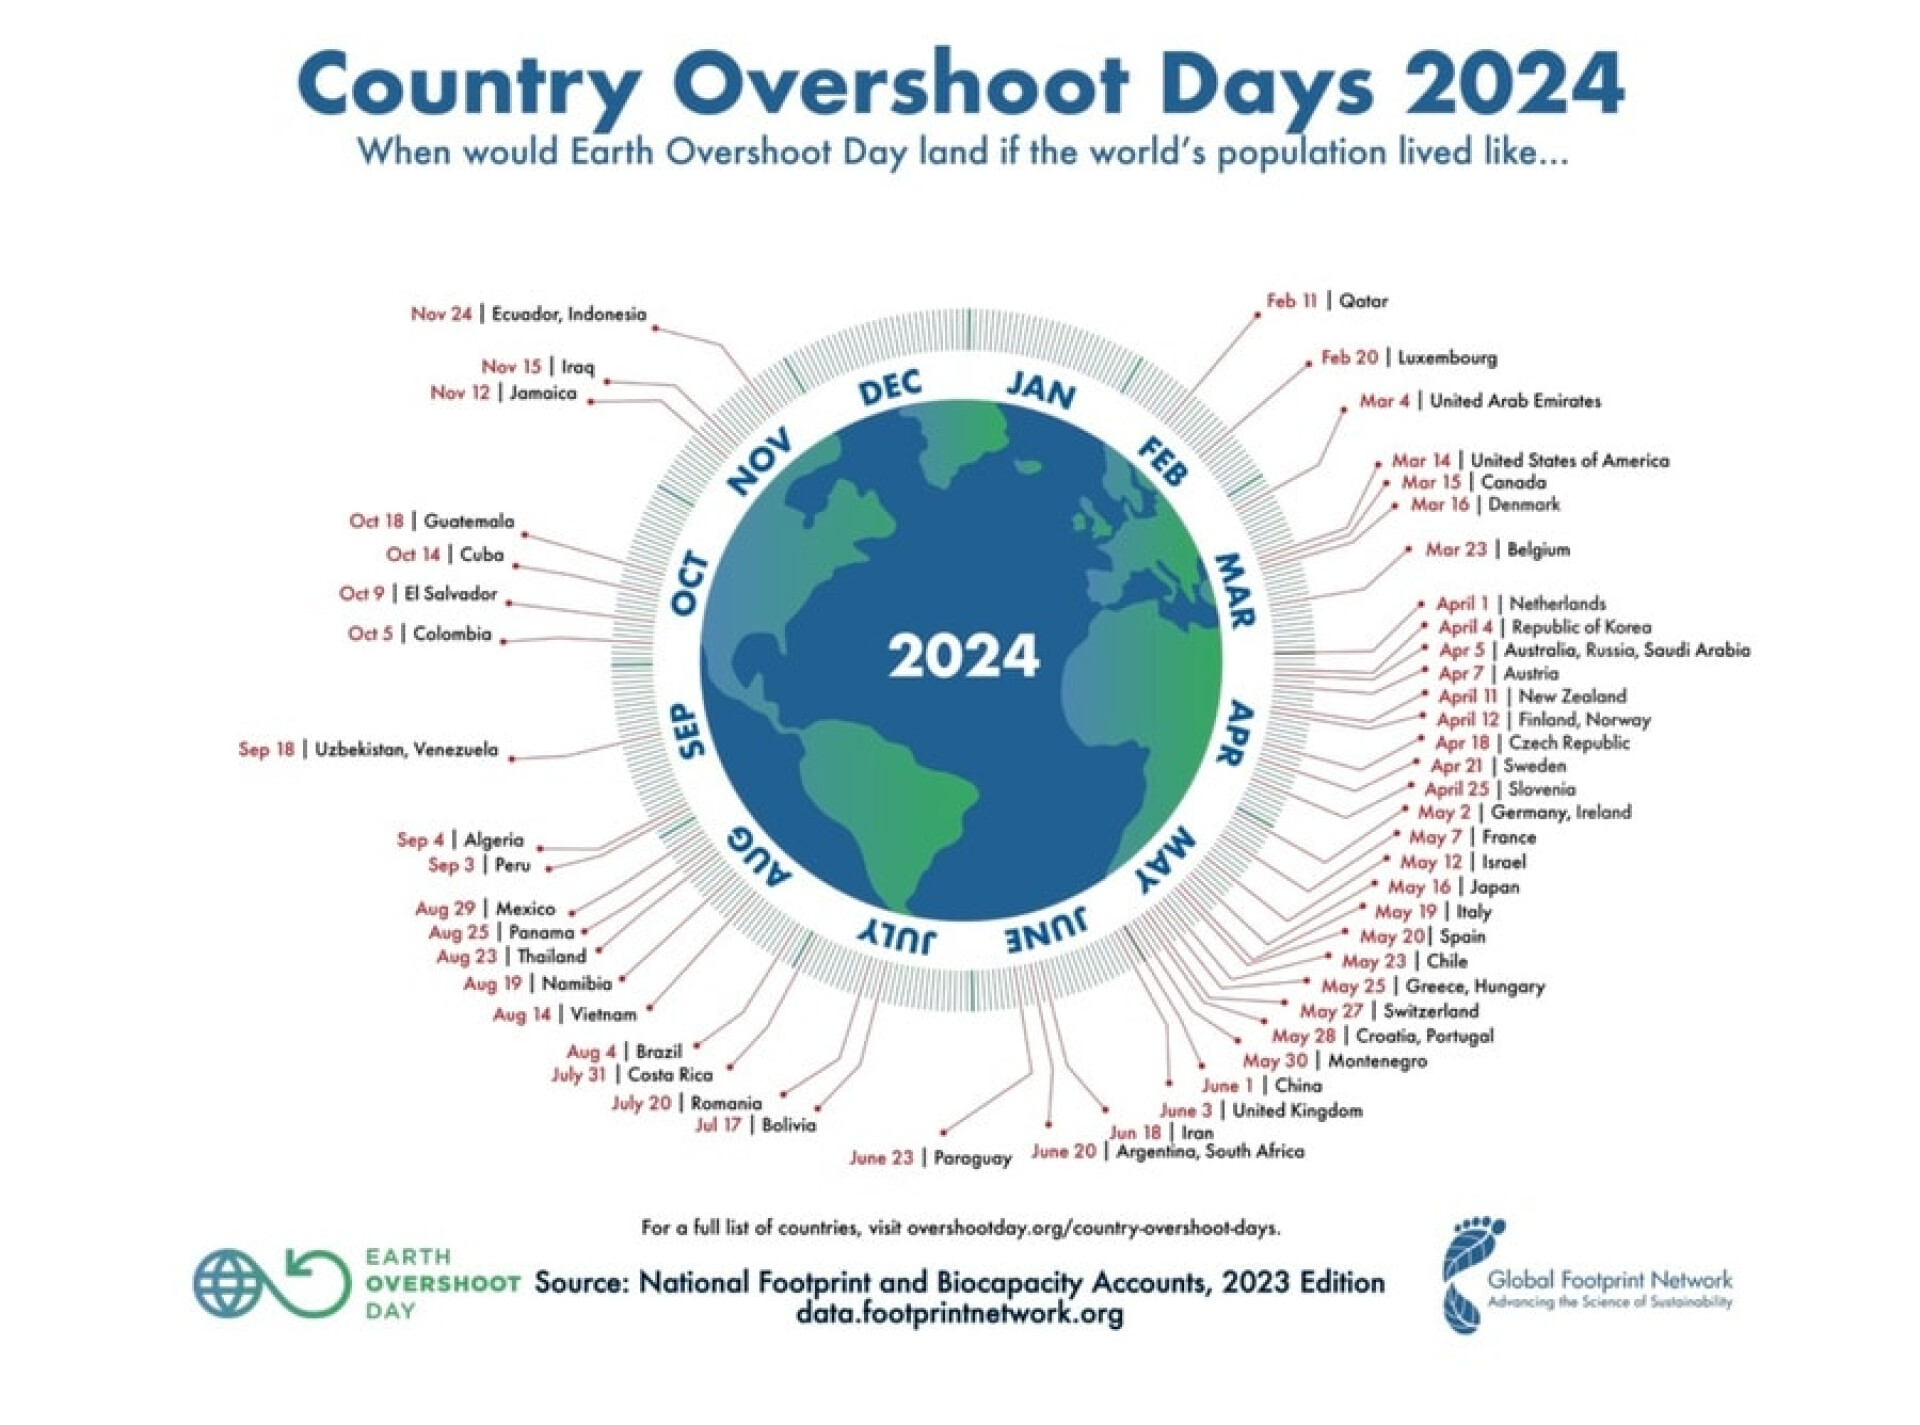 Alla länders overshoot day 2024.